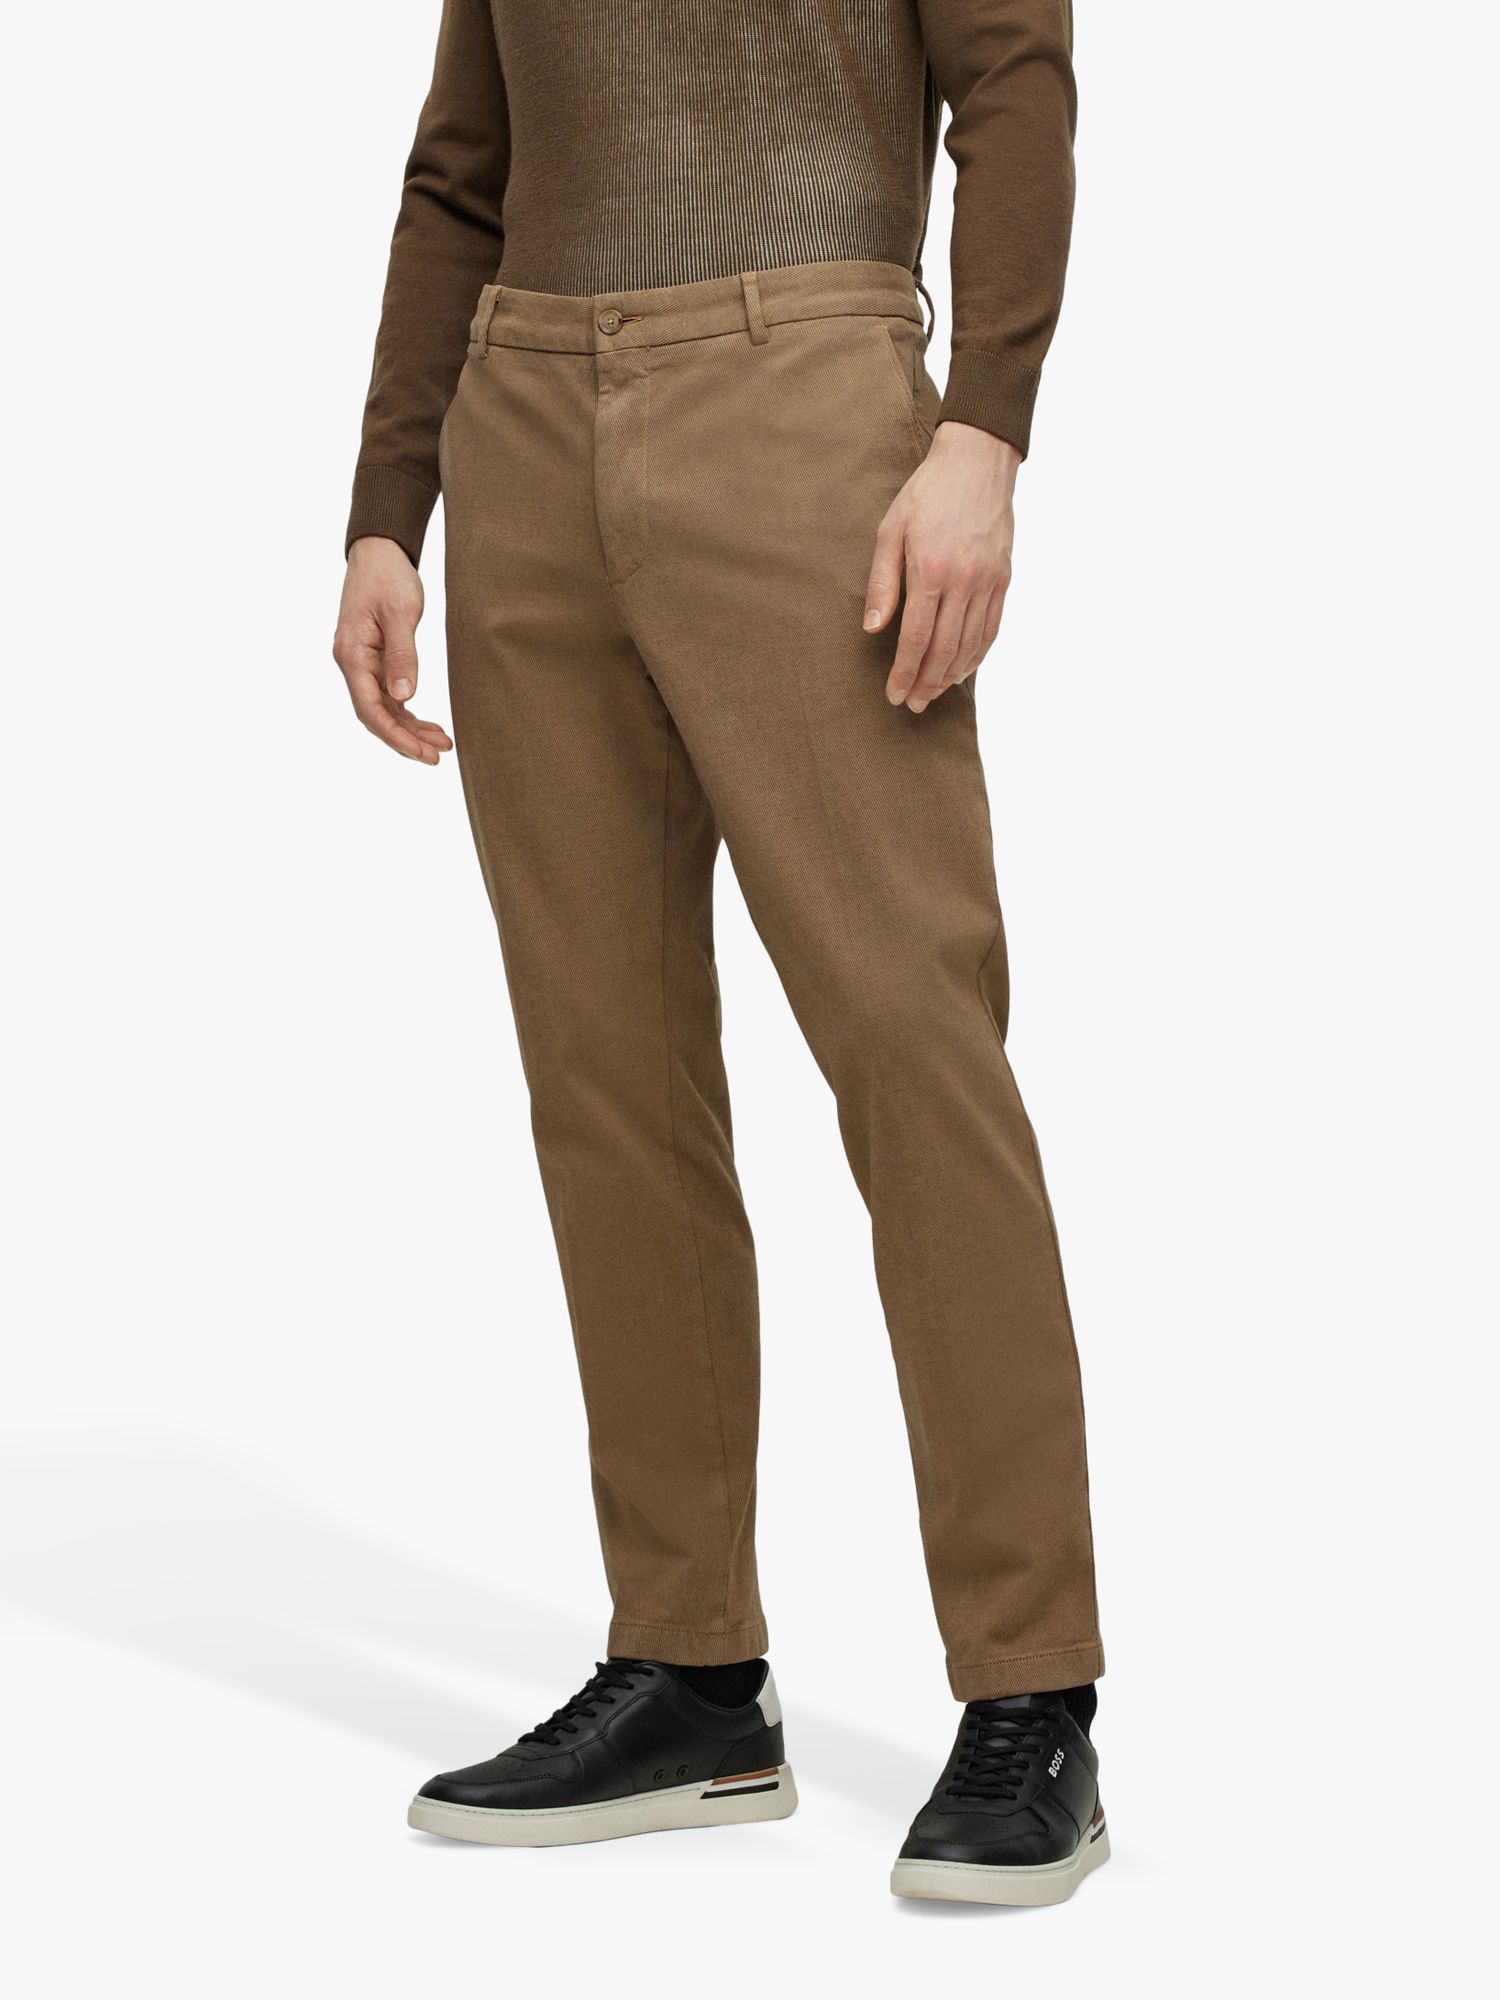 Двухцветные брюки чинос стандартного кроя из эластичного хлопка BOSS, средний бежевый цвет